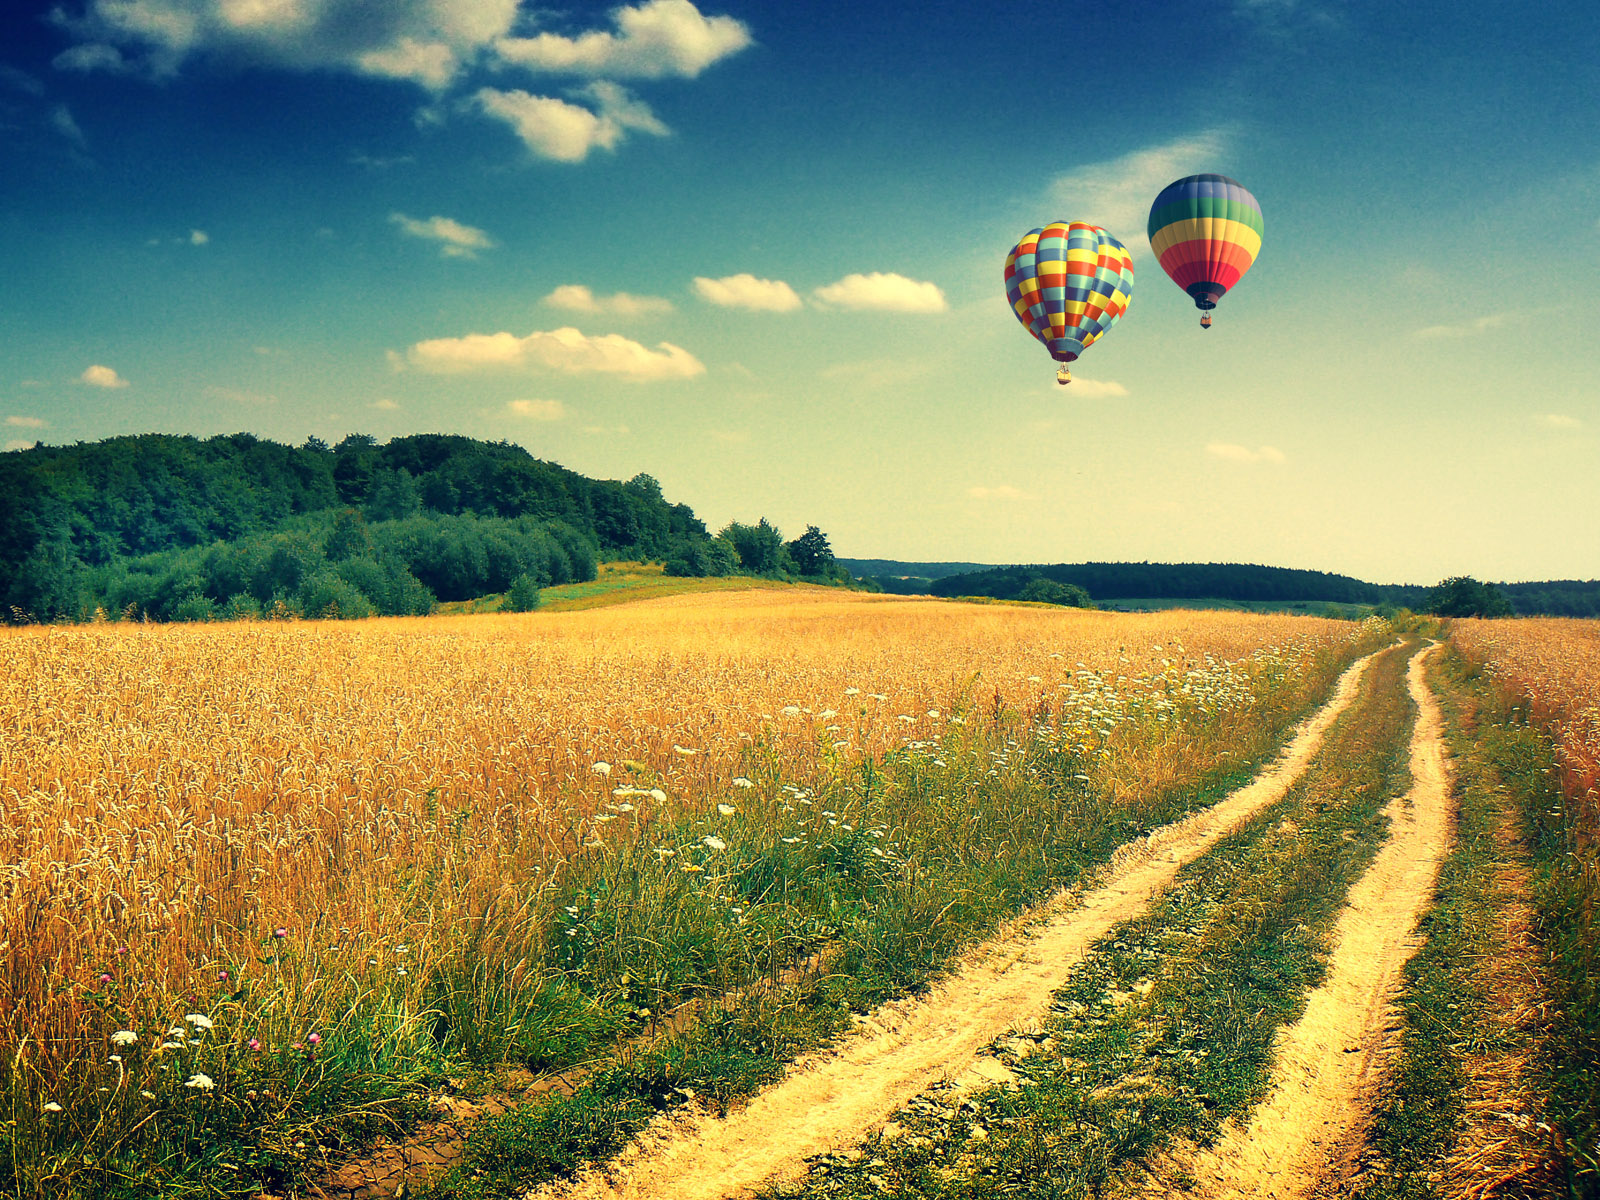 air balloon wallpaper,hot air ballooning,hot air balloon,sky,natural landscape,natural environment